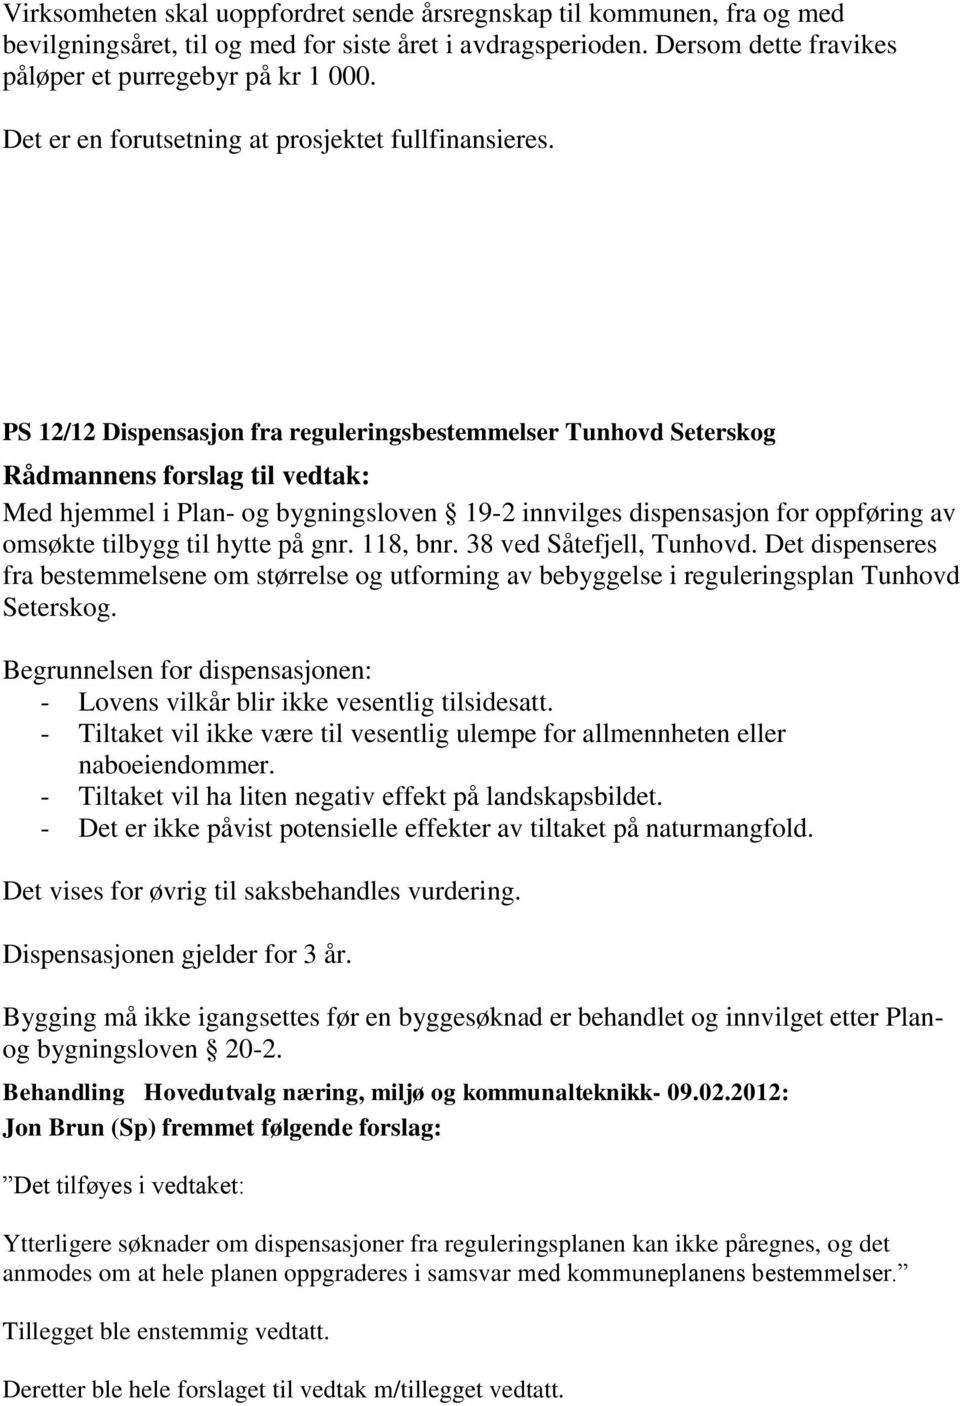 PS 12/12 Dispensasjon fra reguleringsbestemmelser Tunhovd Seterskog Med hjemmel i Plan- og bygningsloven 19-2 innvilges dispensasjon for oppføring av omsøkte tilbygg til hytte på gnr. 118, bnr.